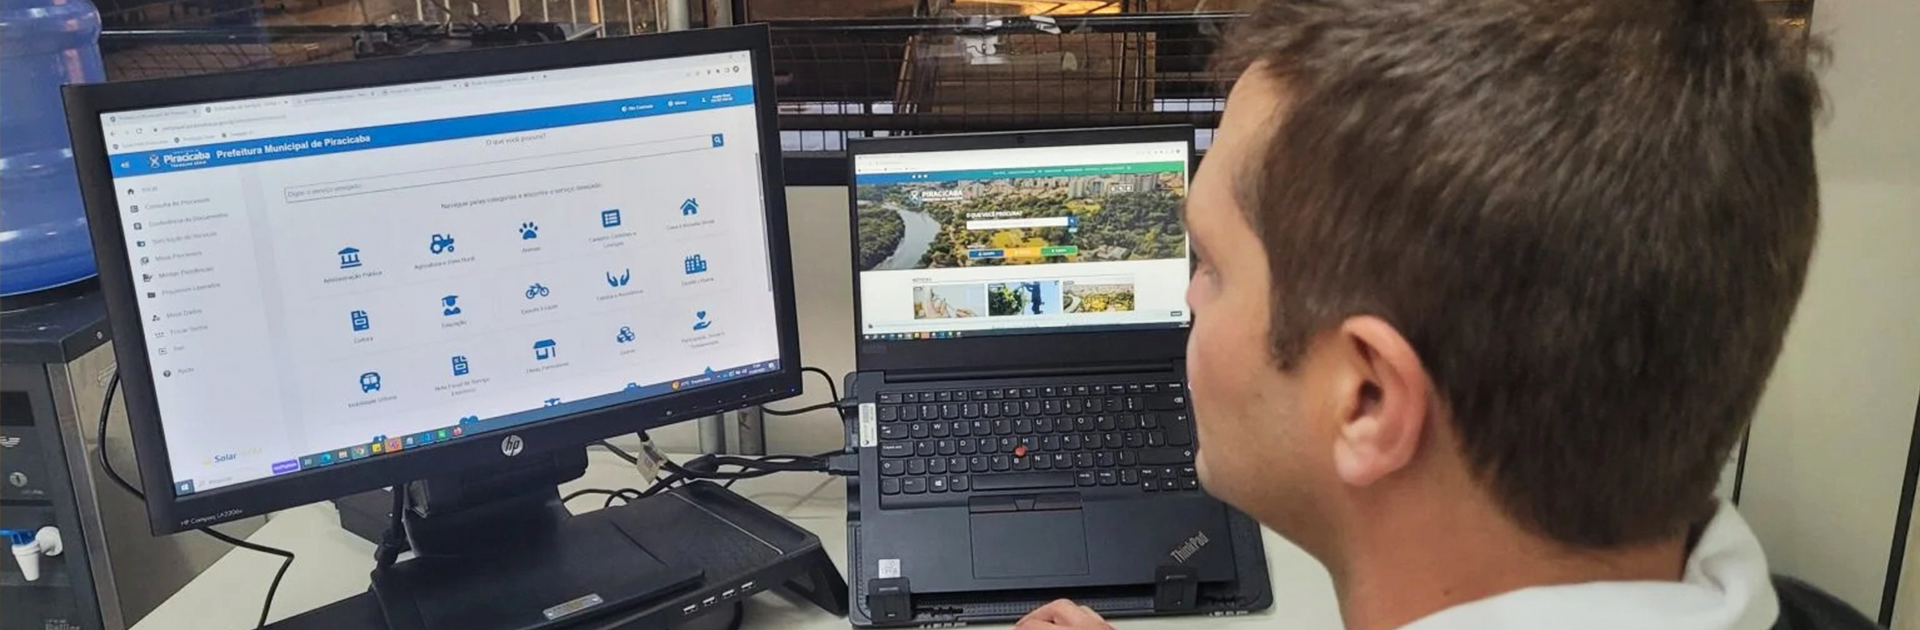 Piracicaba oferece mais de 100 serviços digitais ao cidadão com o Prefeitura Sem Papel 